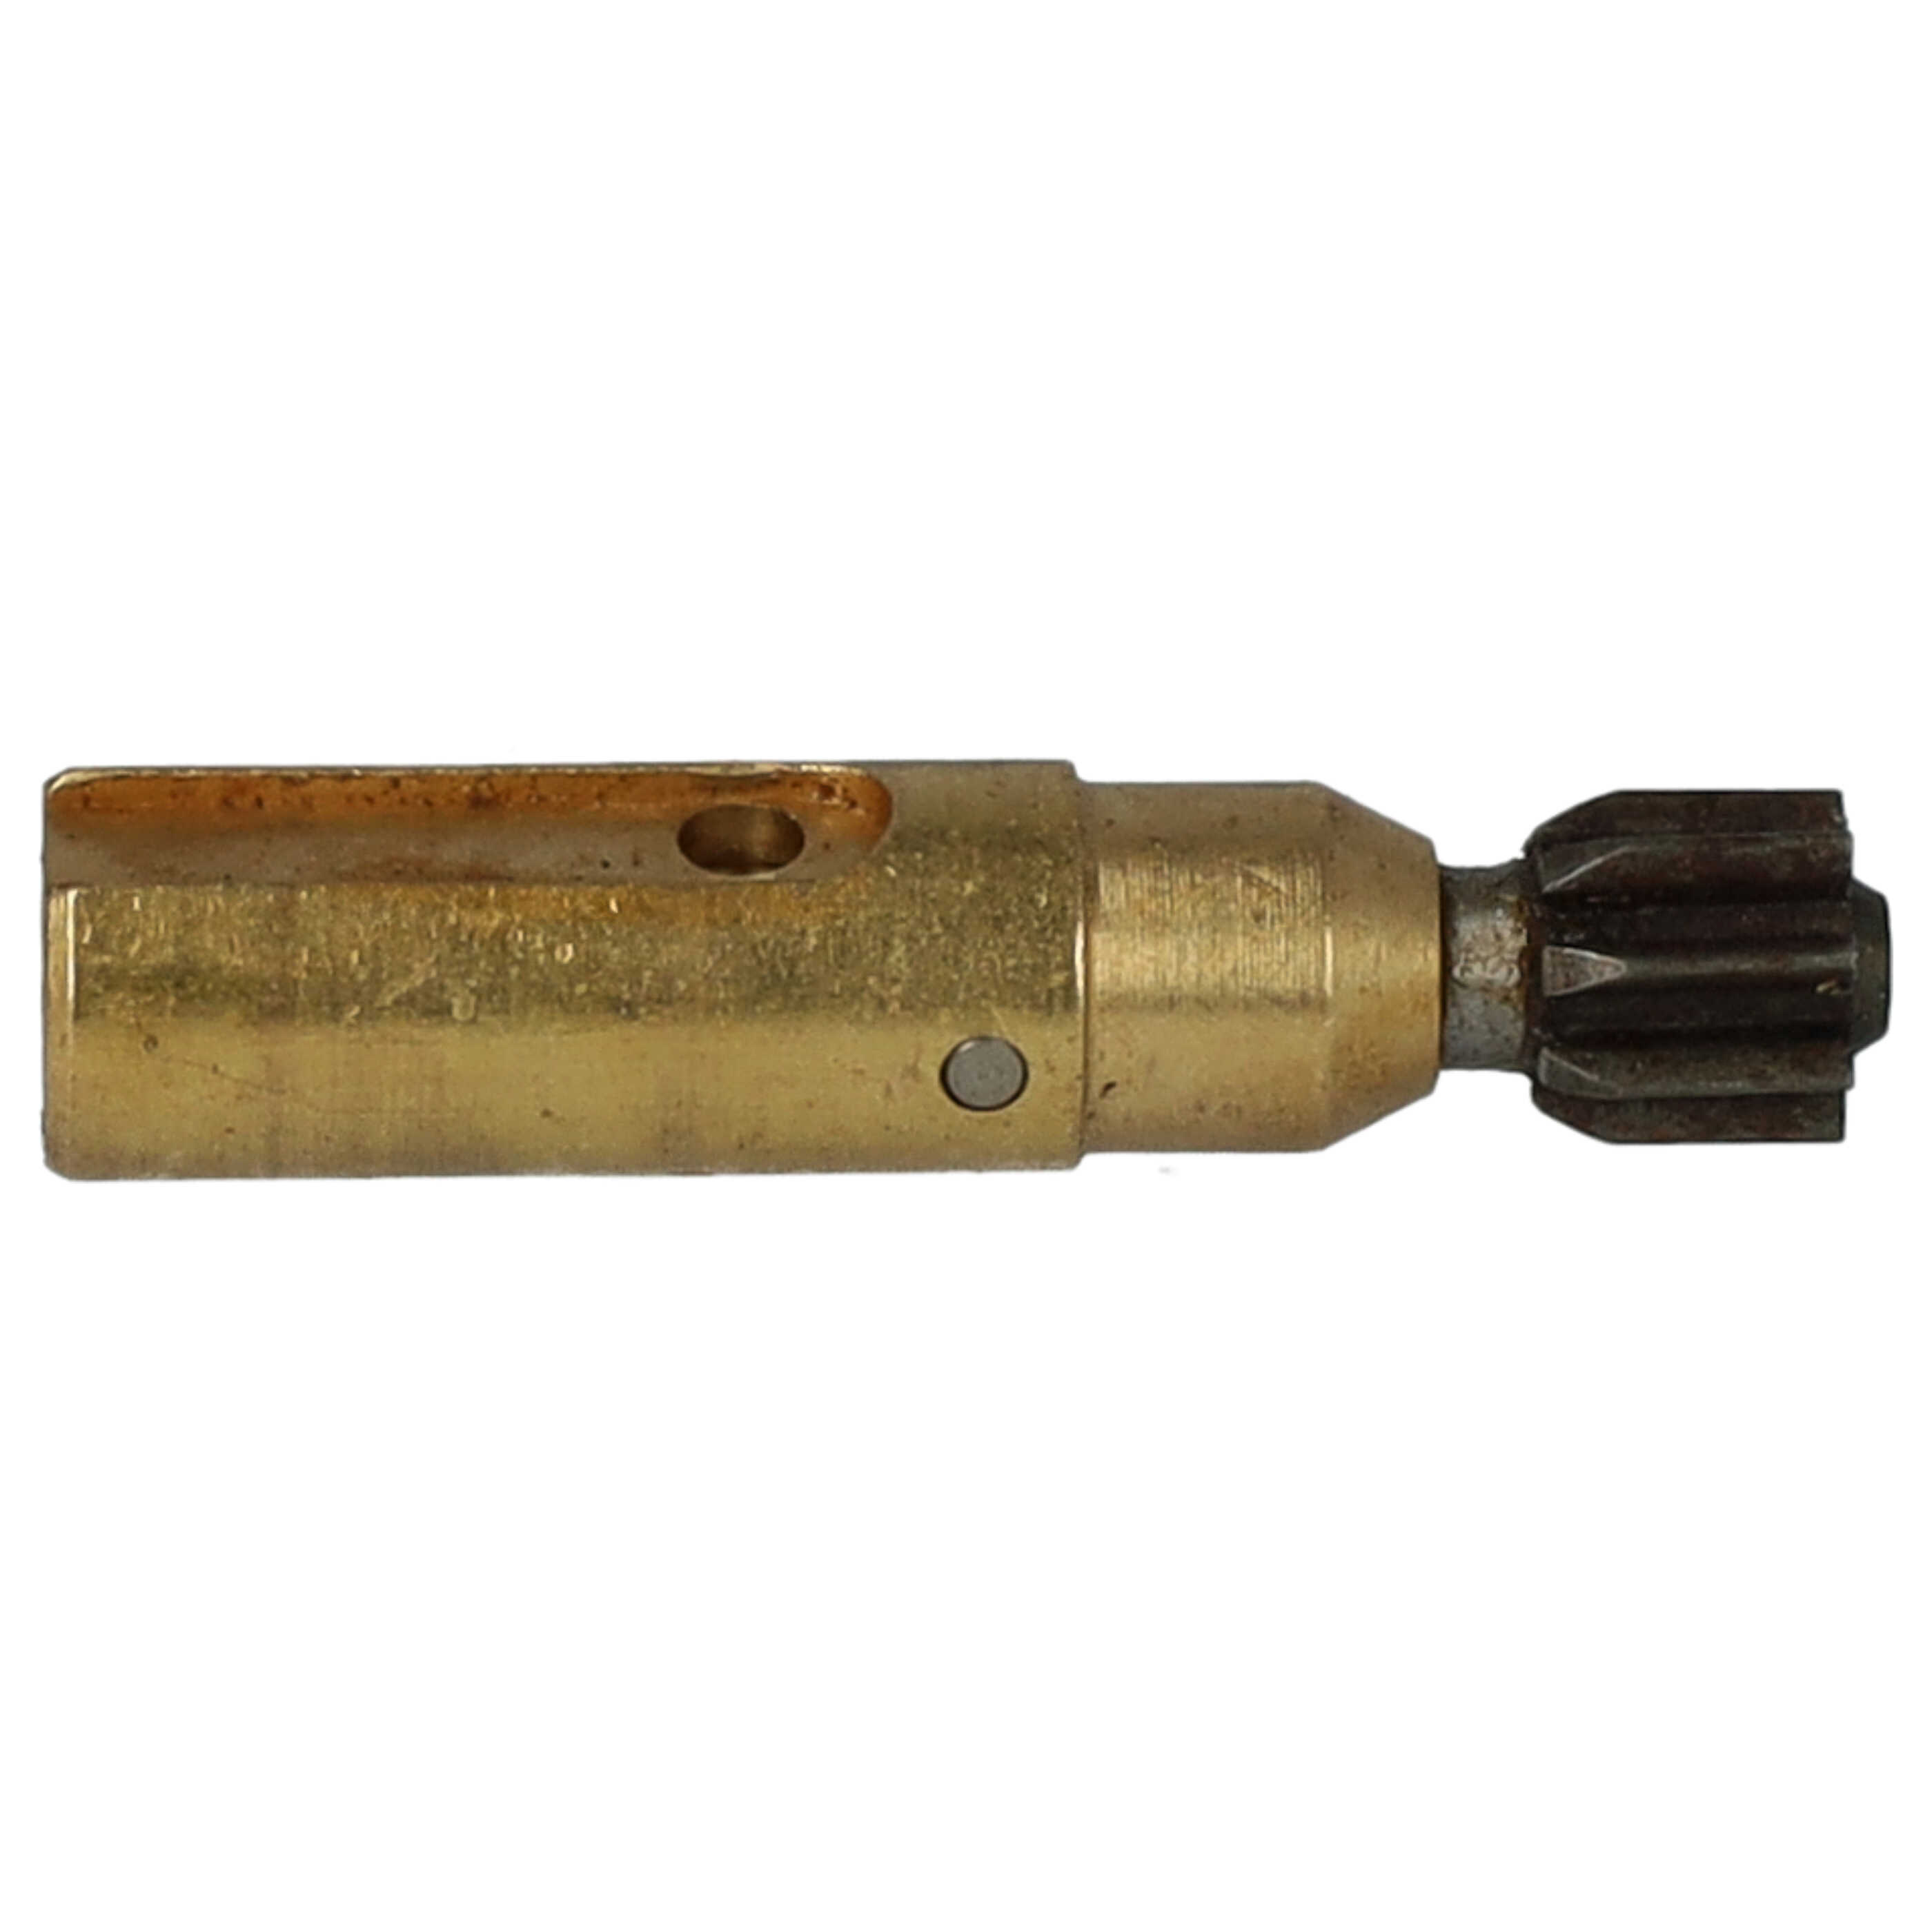 Ölpumpe als Ersatz für Stihl 1123 640 3200 - Eisen, 0,8 cm Durchmesser, Einstellbar 